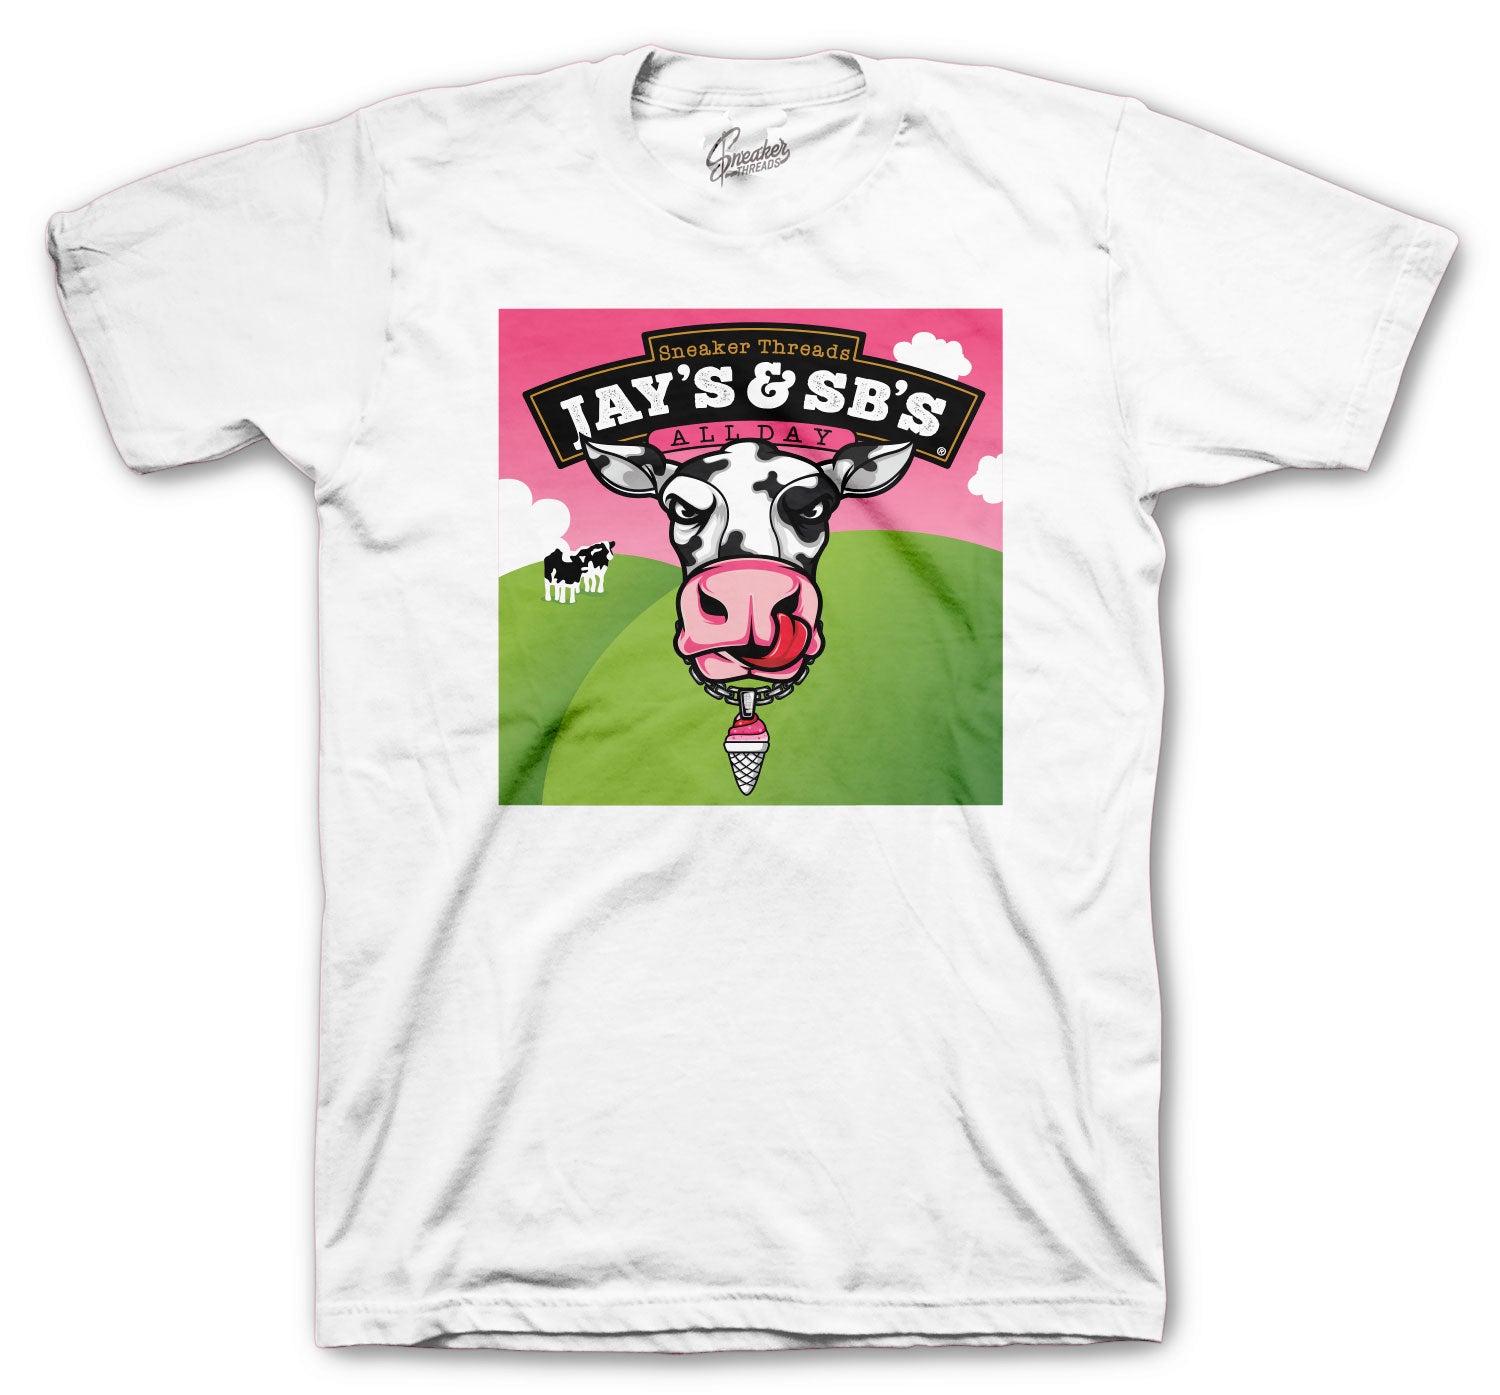 Retro 12 Ice Cream Shirt - Jays & SBs - White